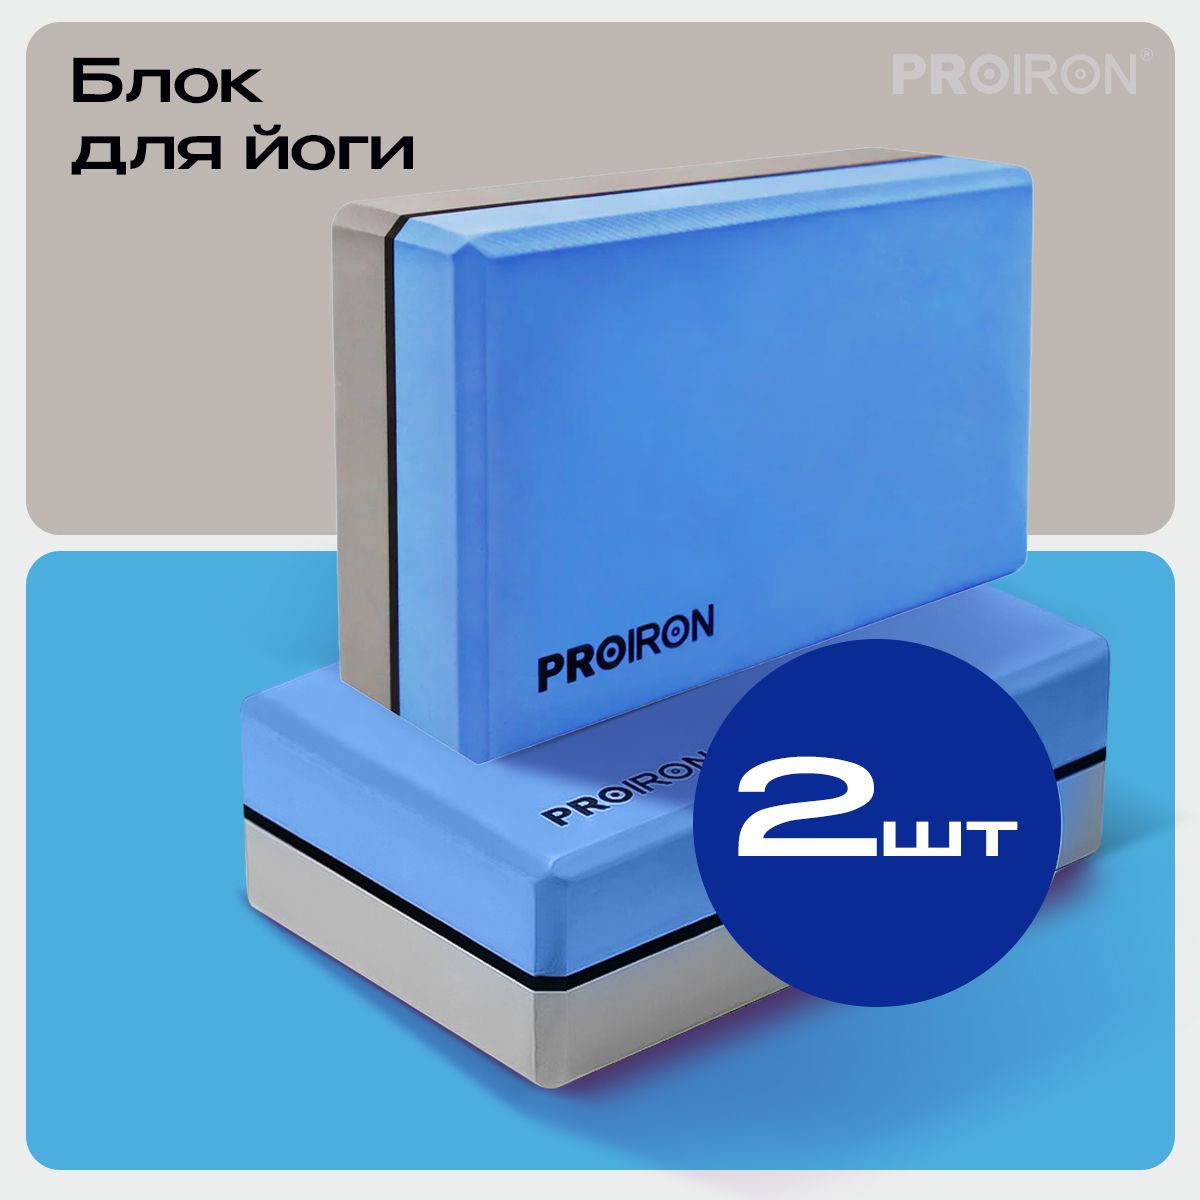 Блок для йоги PROIRON, 228х150х76 мм, сине-серый, 2 шт.